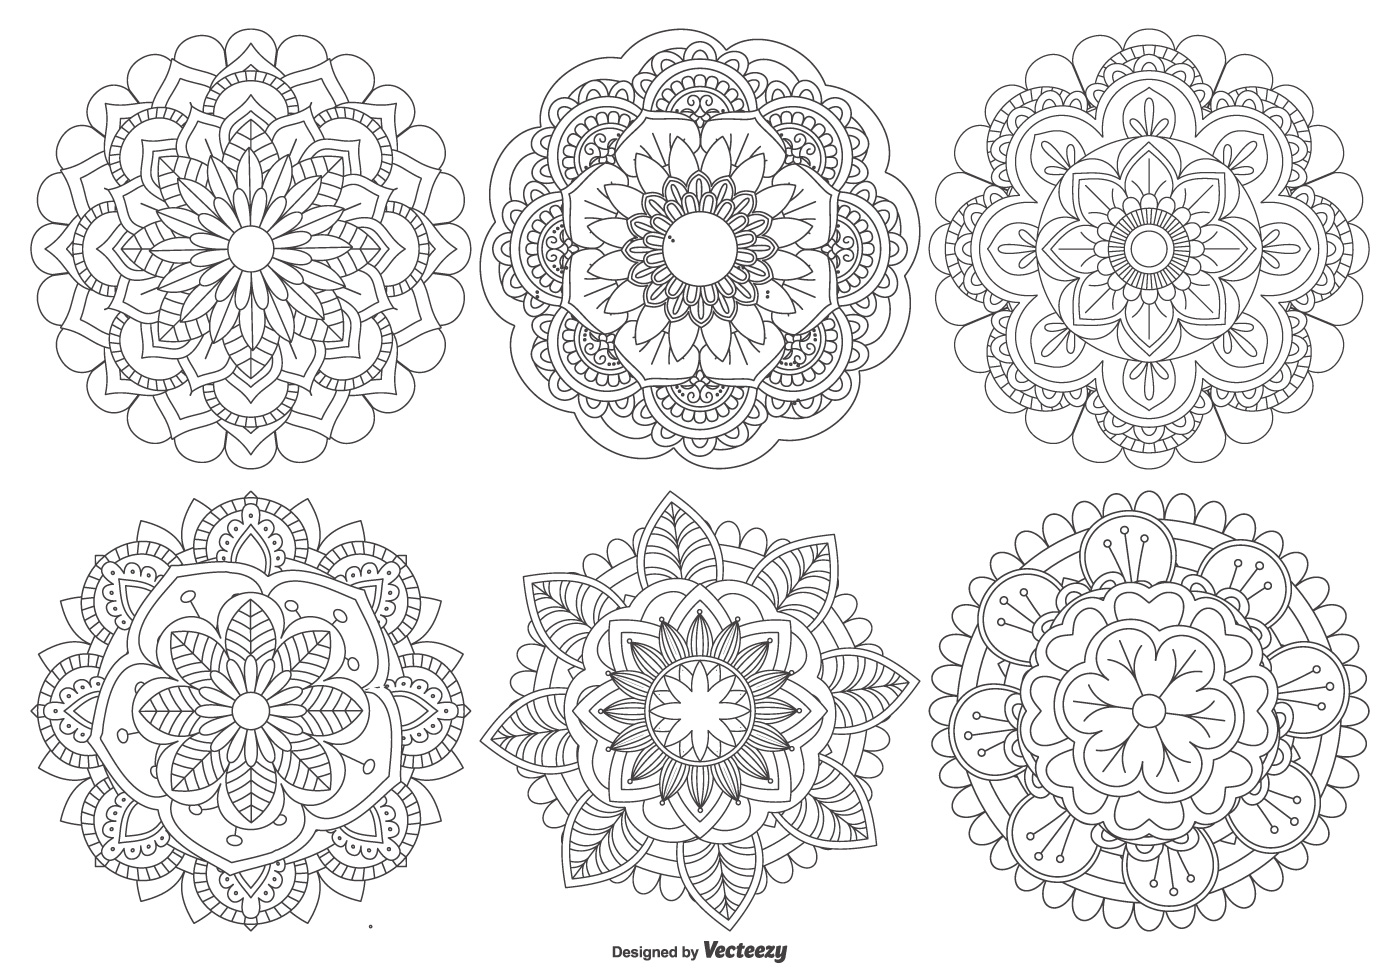 Download Mandala Free Vector Art - (7,382 Free Downloads)